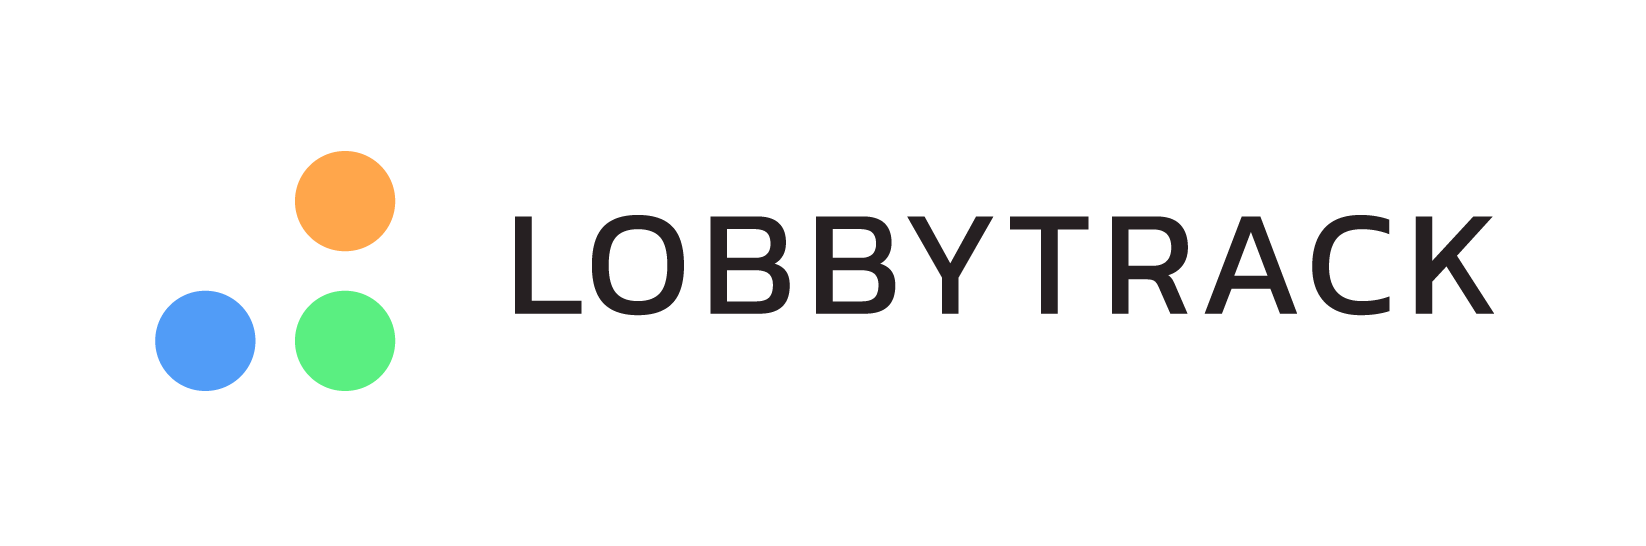 Lobbytrack